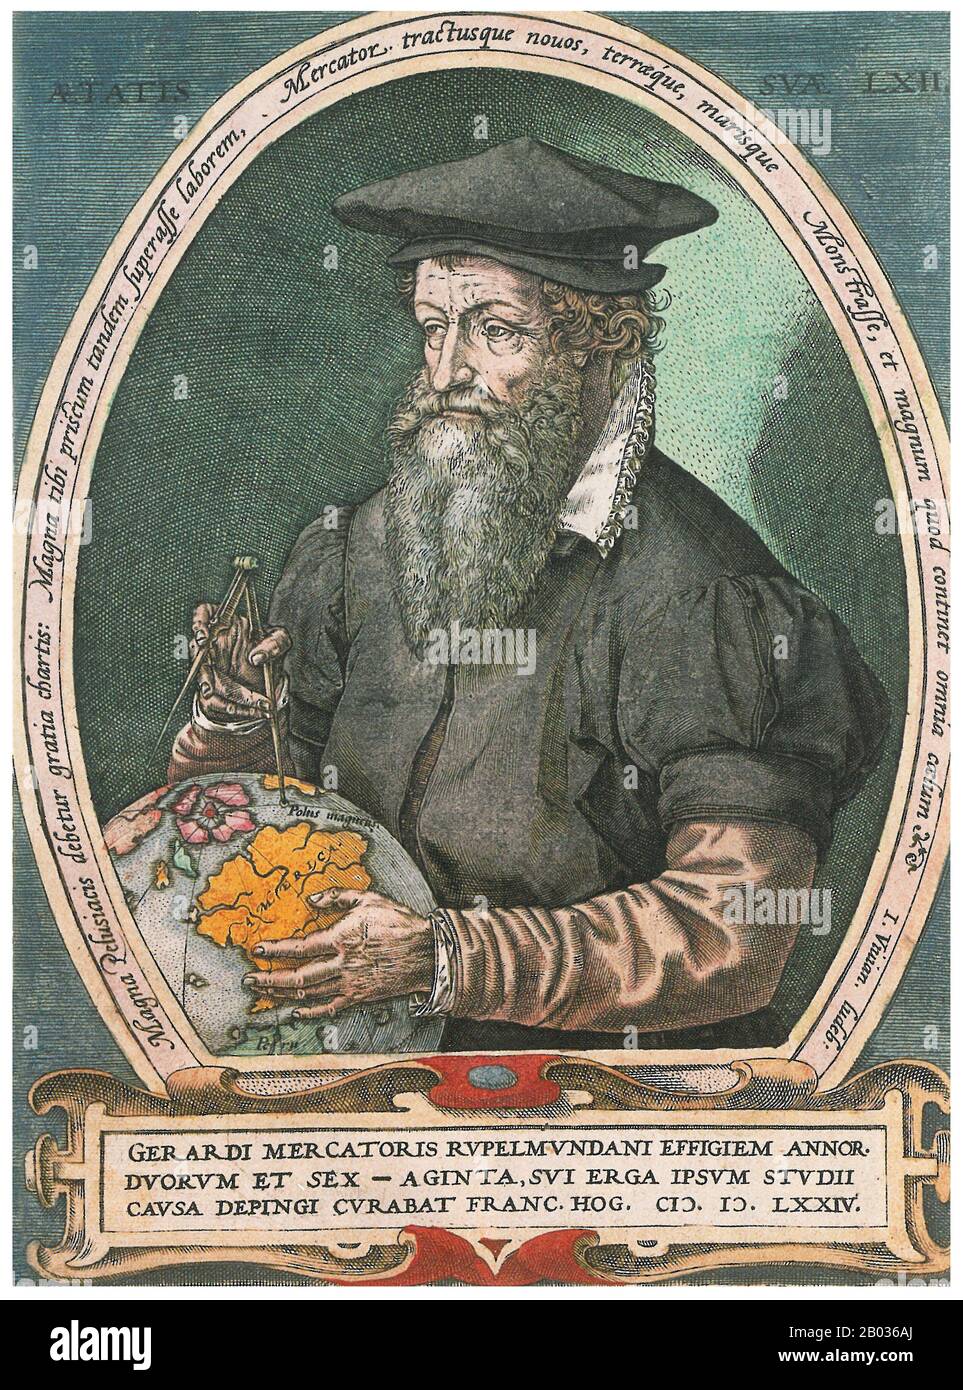 Gerardus Mercator, un alemán flamenco (5 de marzo de 1512 – 2 de diciembre de 1594) fue un cartógrafo conocido por crear un mapa mundial basado en una nueva proyección que representaba cursos de navegación de constante marcación como líneas rectas, una innovación que todavía se emplea en las cartas náuticas utilizadas para la navegación. En su propio día era el geógrafo más famoso del mundo pero, además, tenía intereses en teología, filosofía, historia, matemáticas y magnetismo, así como ser un grabador, calígrafo y creador de globos e instrumentos científicos. Foto de stock